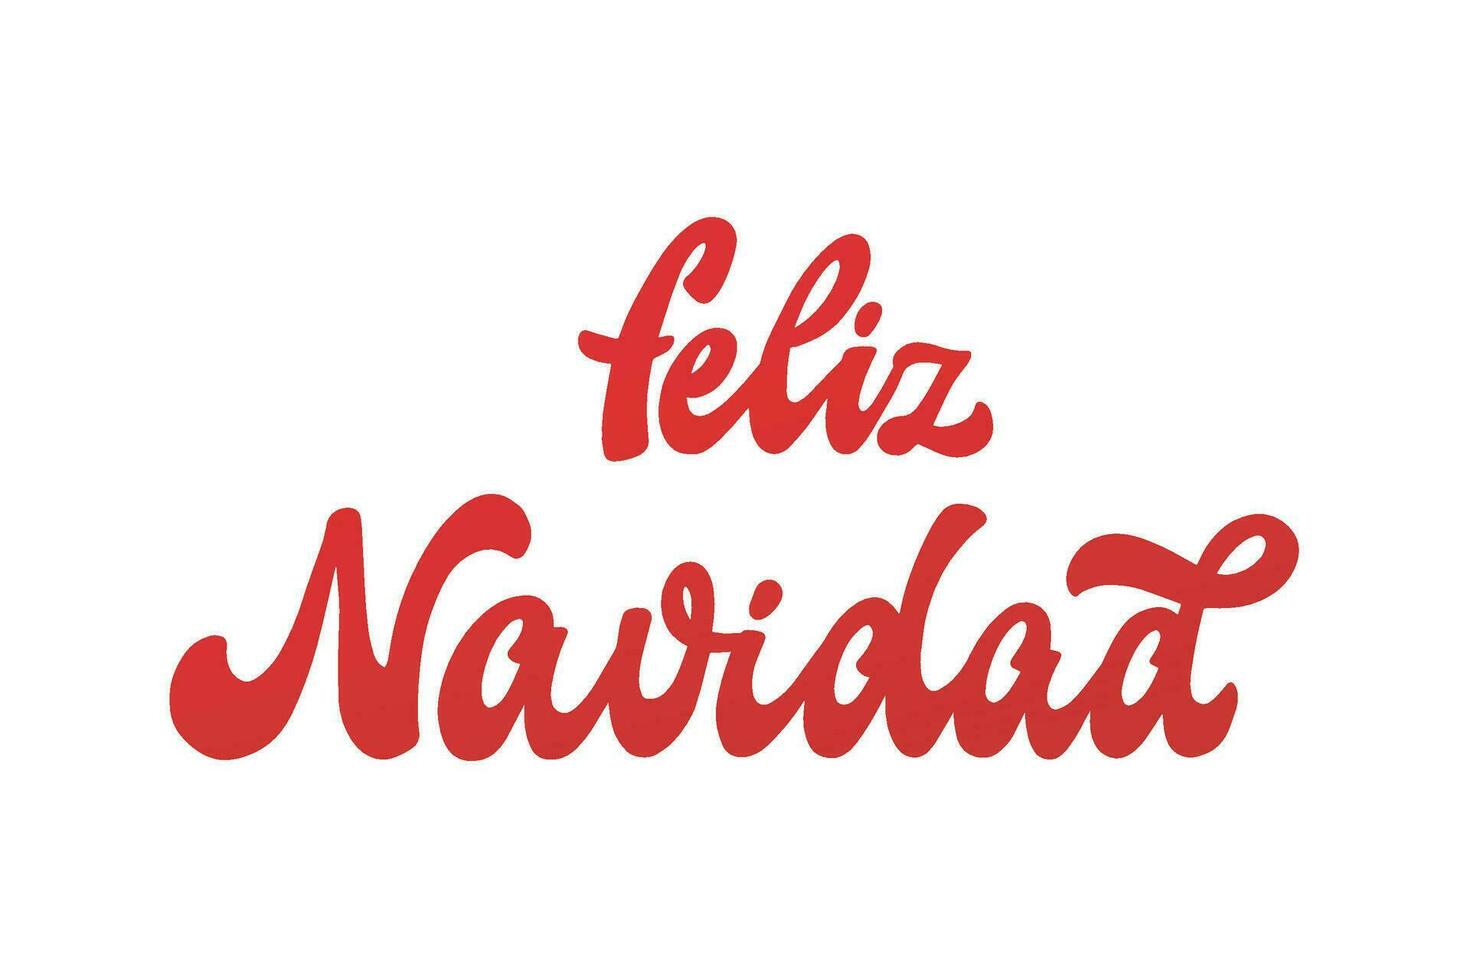 feliz navidad Hand Beschriftung Zitat im Spanisch - - Übersetzung fröhlich Weihnachten. gut zum Poster, Drucke, Karten, Zeichen, Banner, Einladungen, Aufkleber, Sublimation, usw. eps 10 vektor